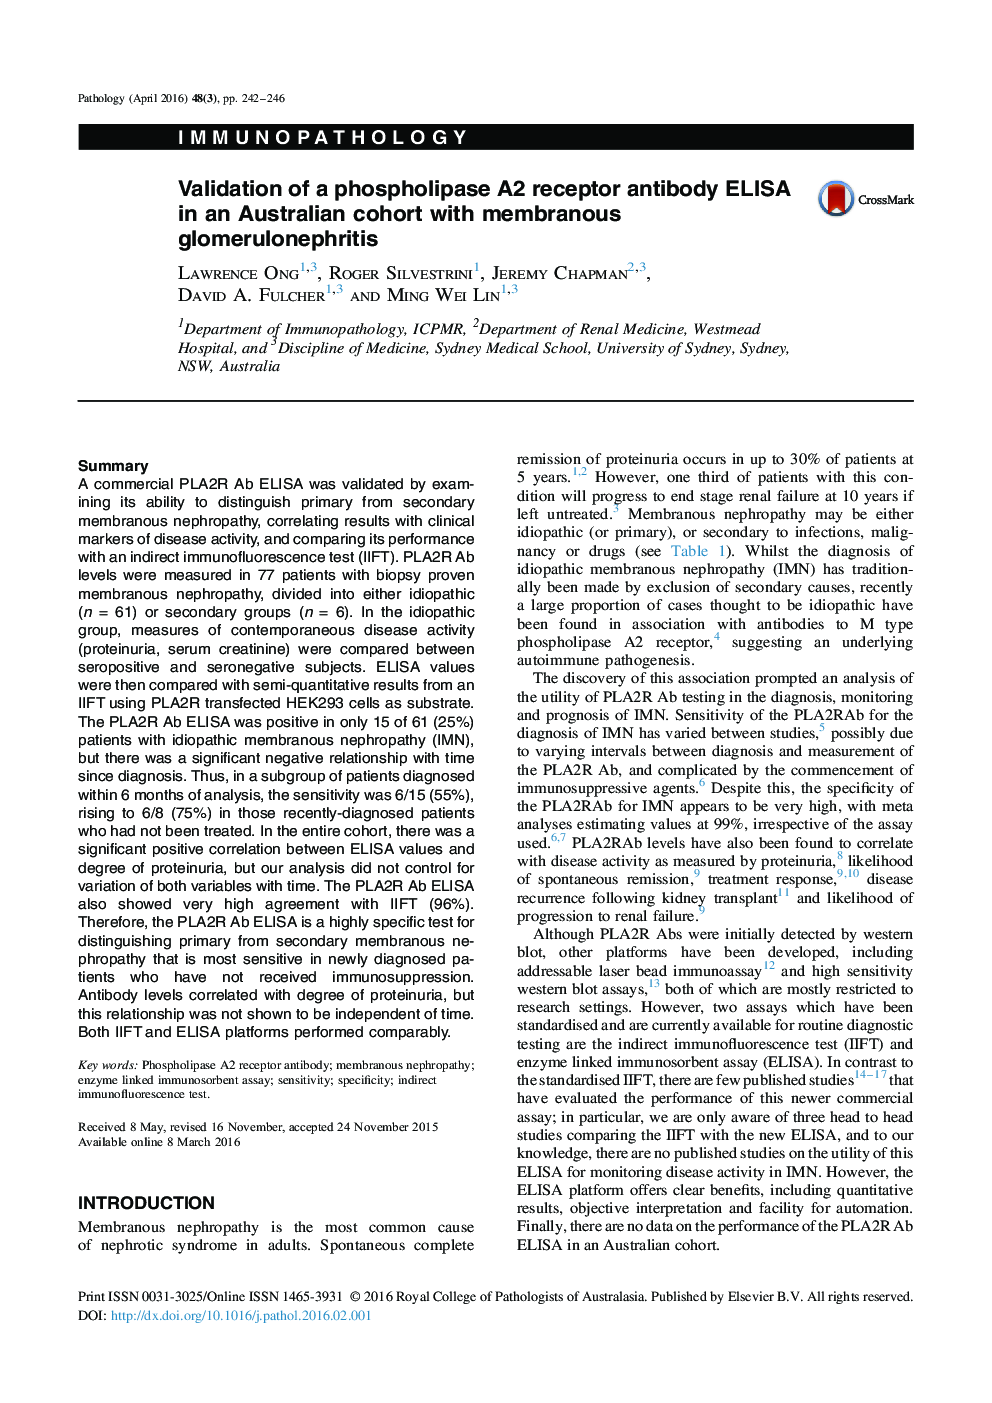 اعتبار سنجی ELISA آنتی بادی گیرنده فسفولیپاز A2 در یک گروه استرالیایی با گلومرولونفریت غشایی